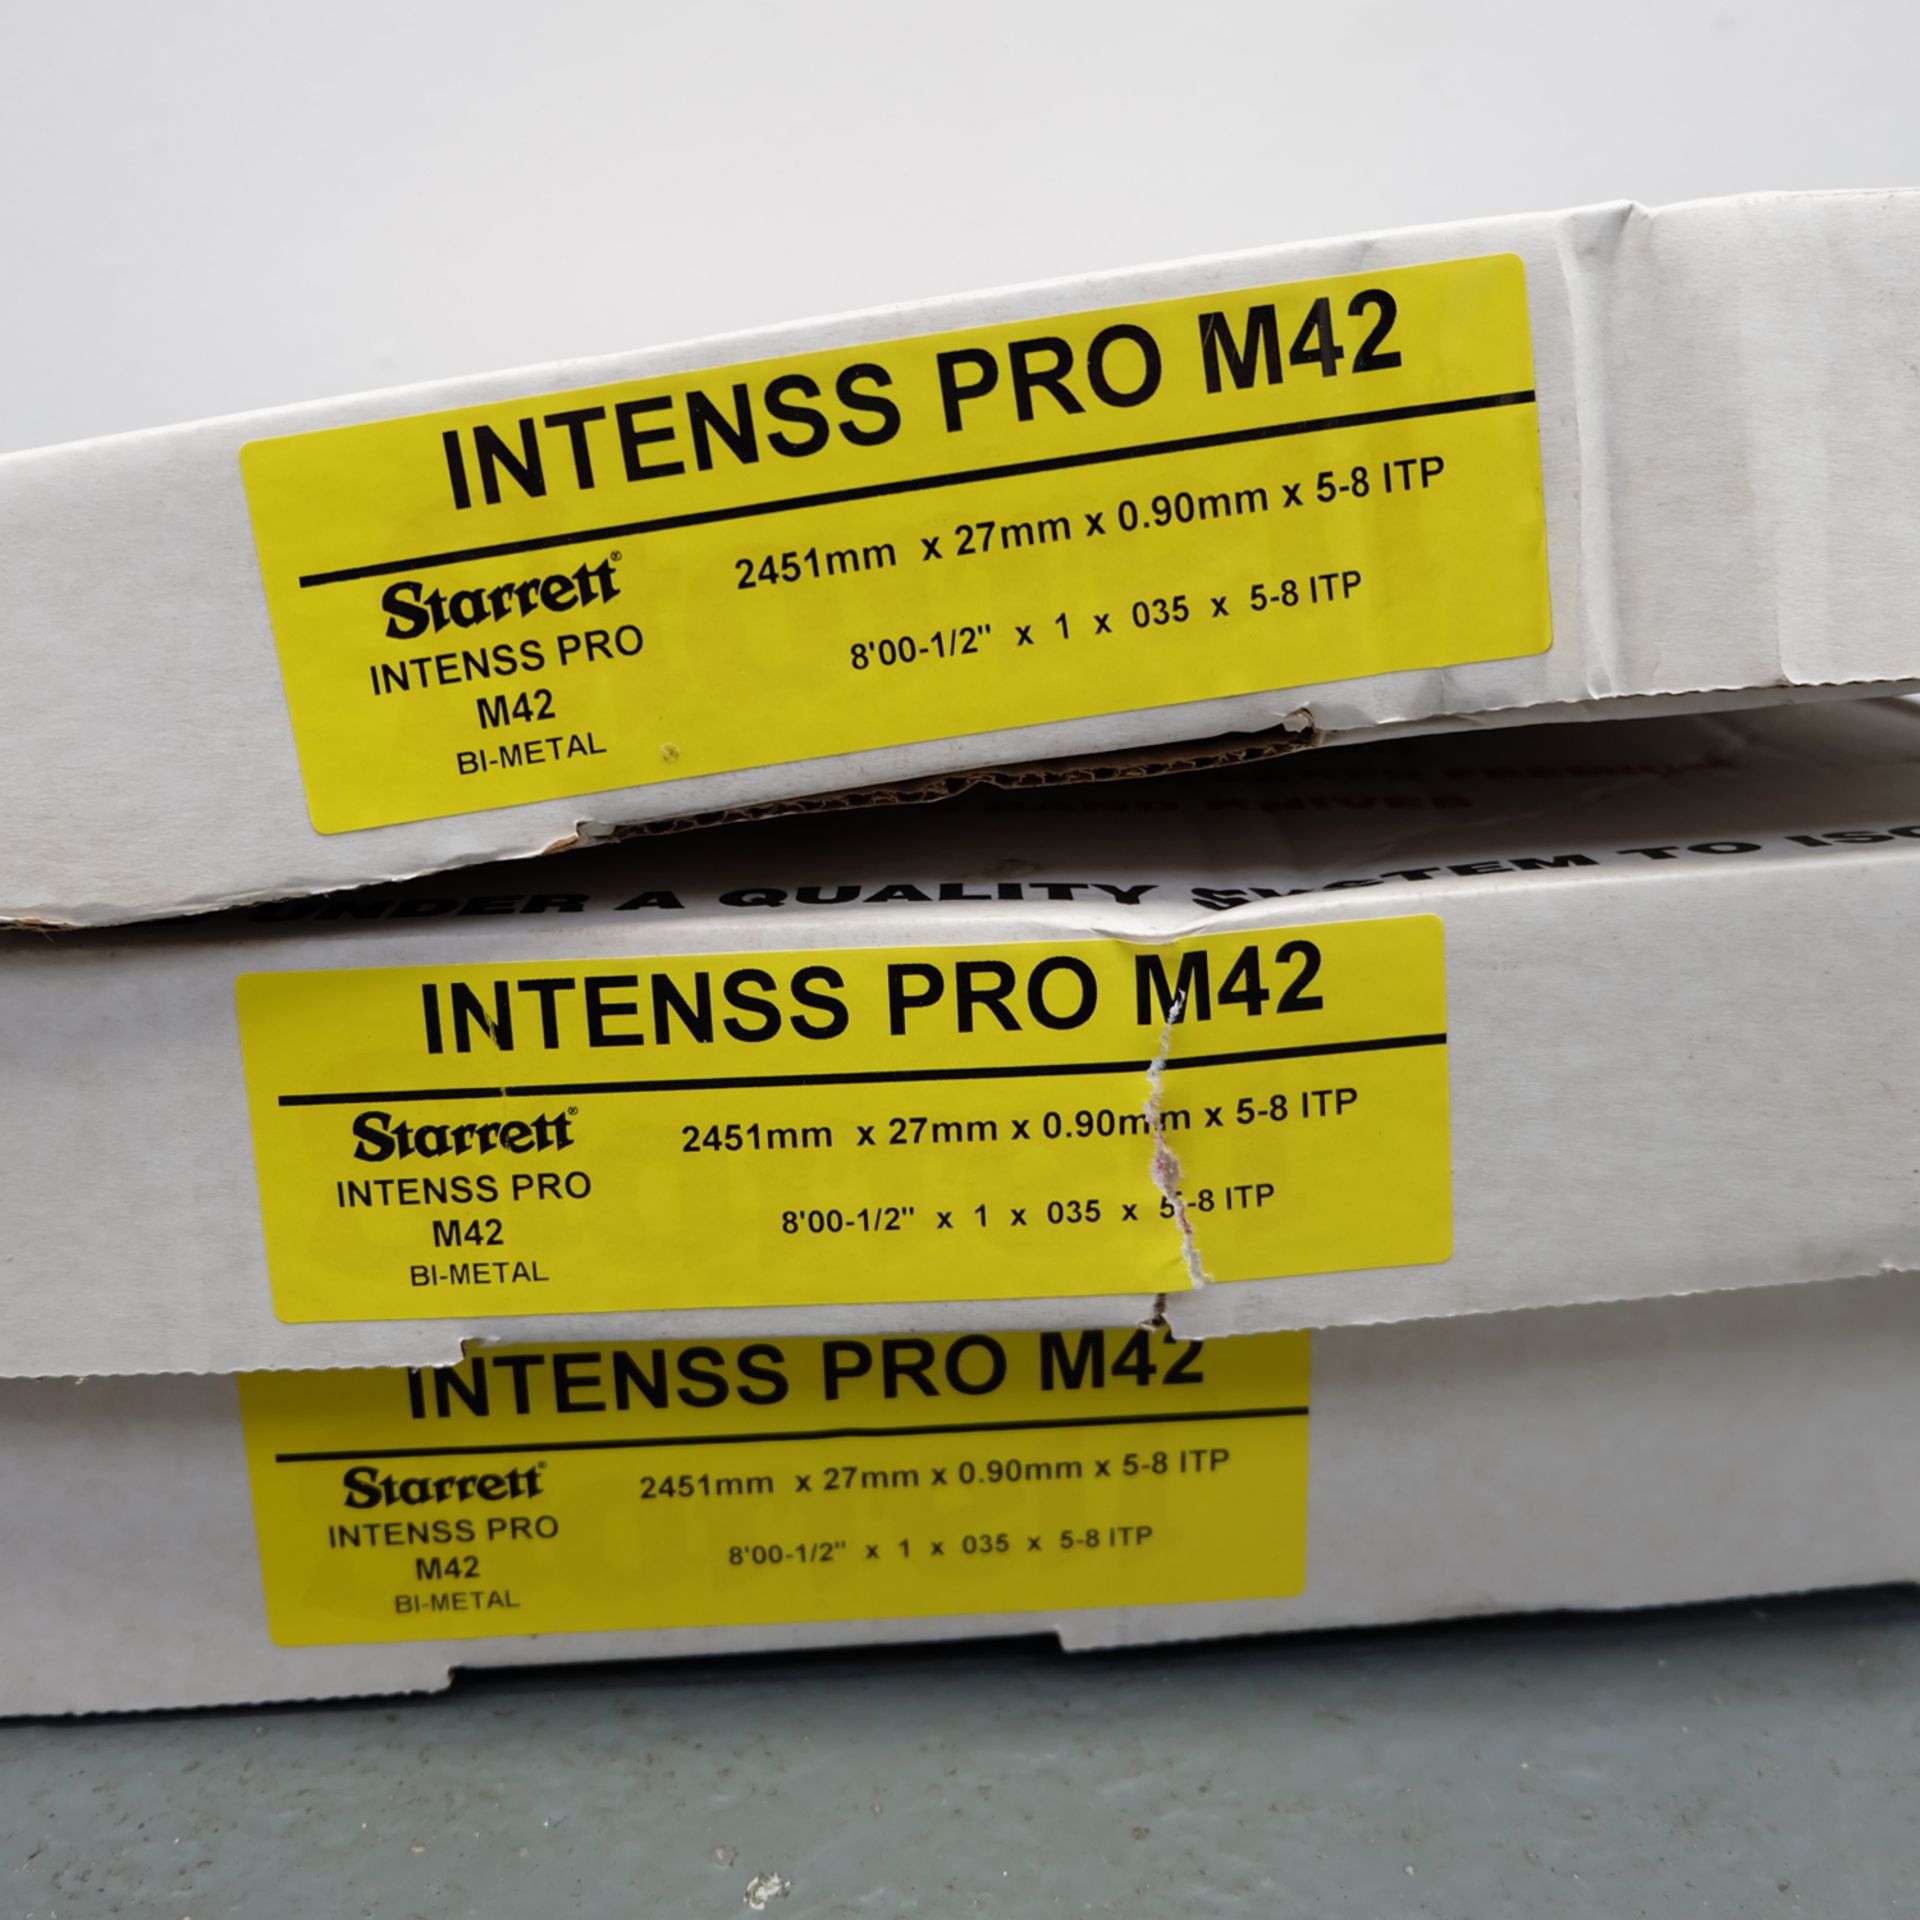 3 x Starrett Intenss Pro M42 Saw Blades. 2451mm x 27mm x 0.9mm. - Image 2 of 2